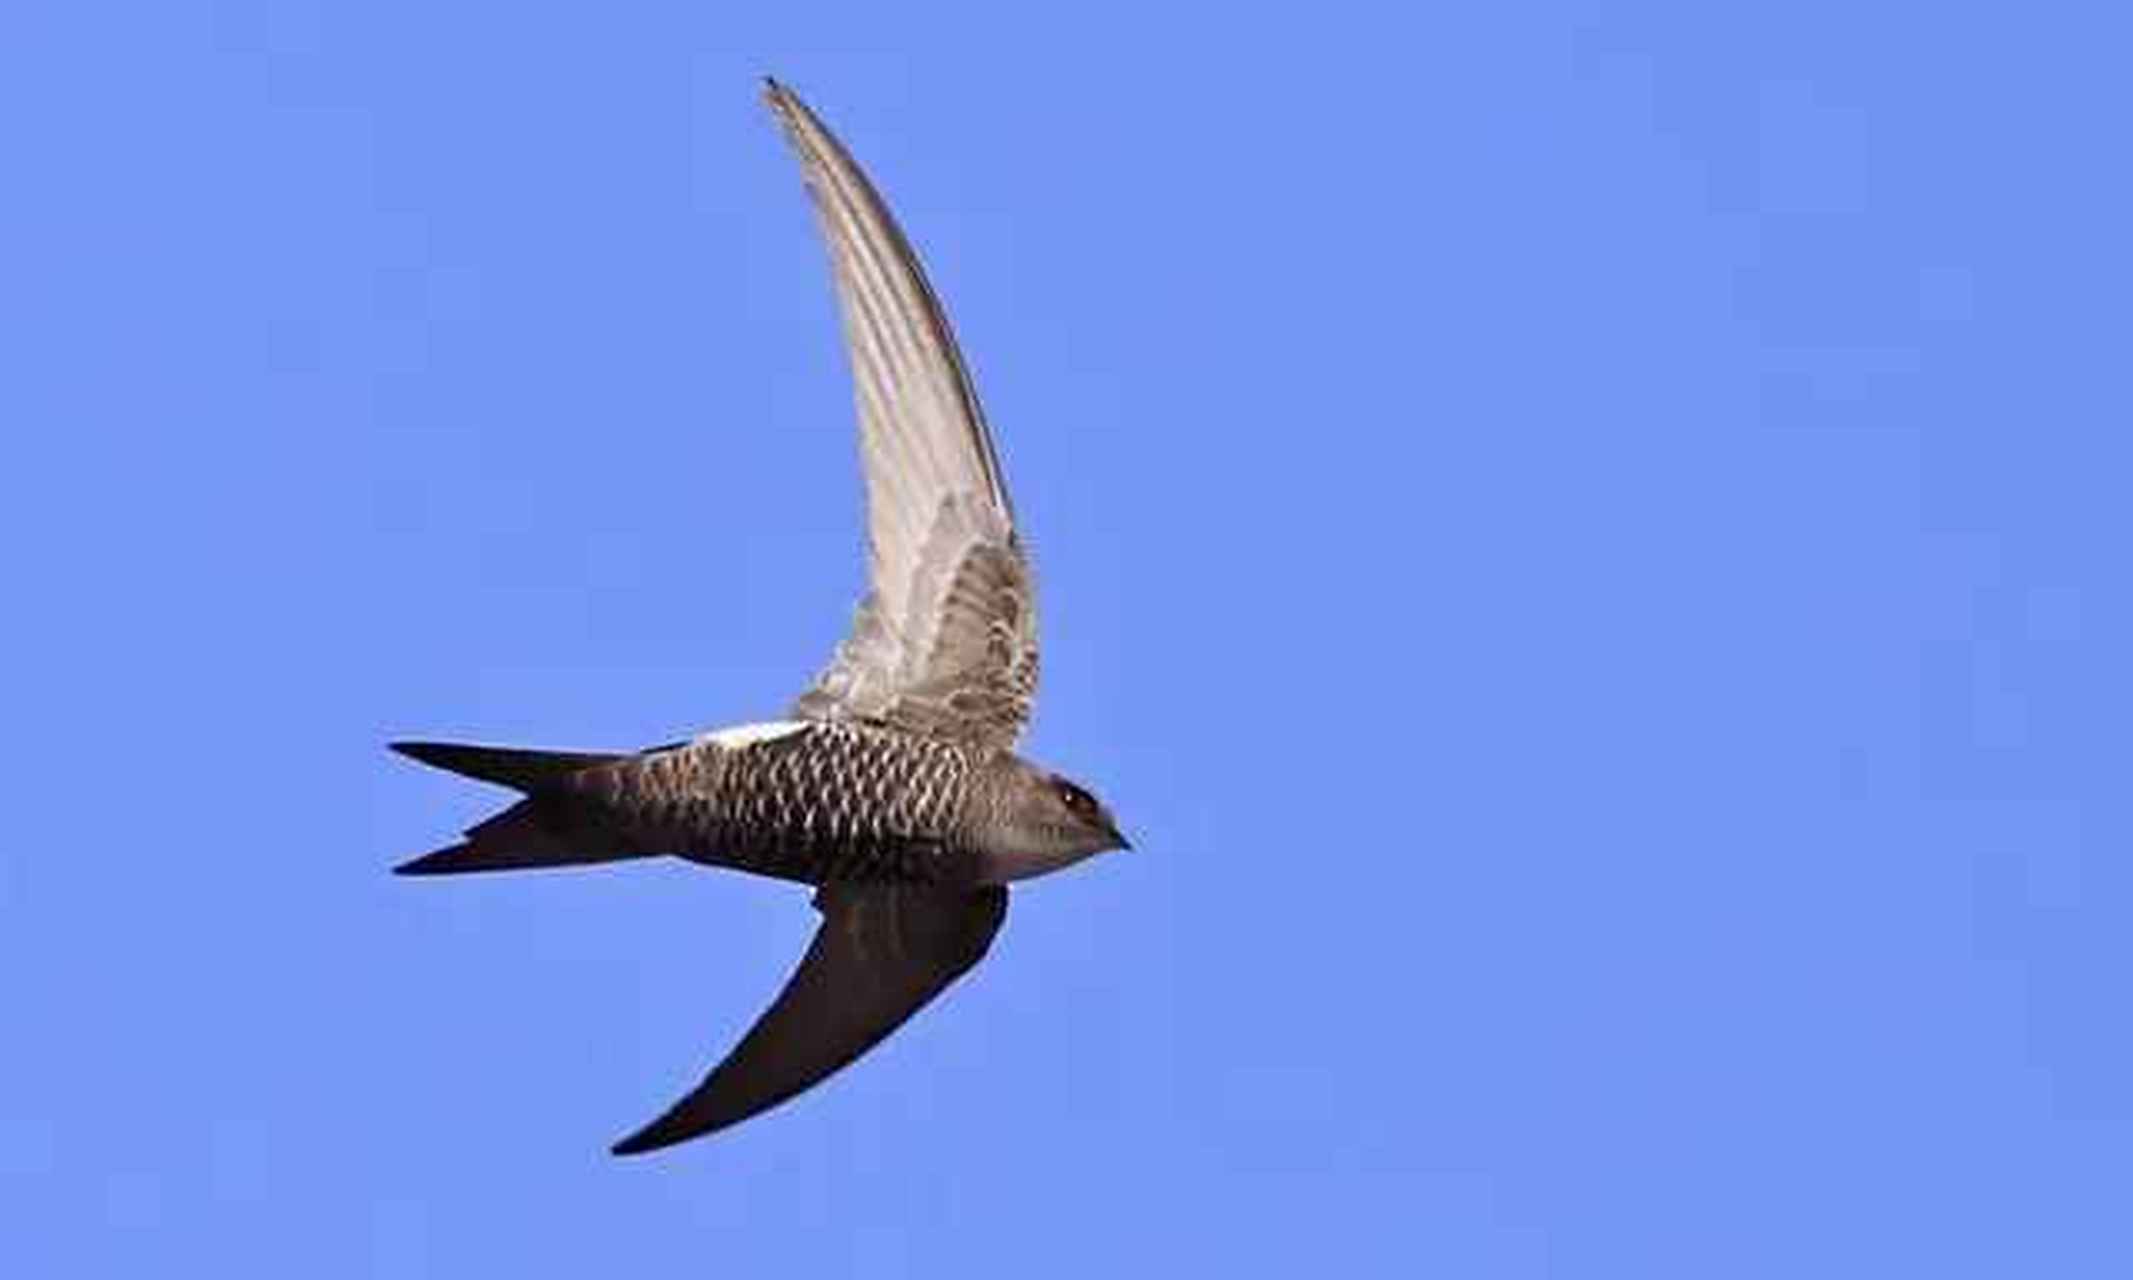 尖尾雨燕每天可飞越800公里,它们不但在空中捕食,还能在空中喝水和